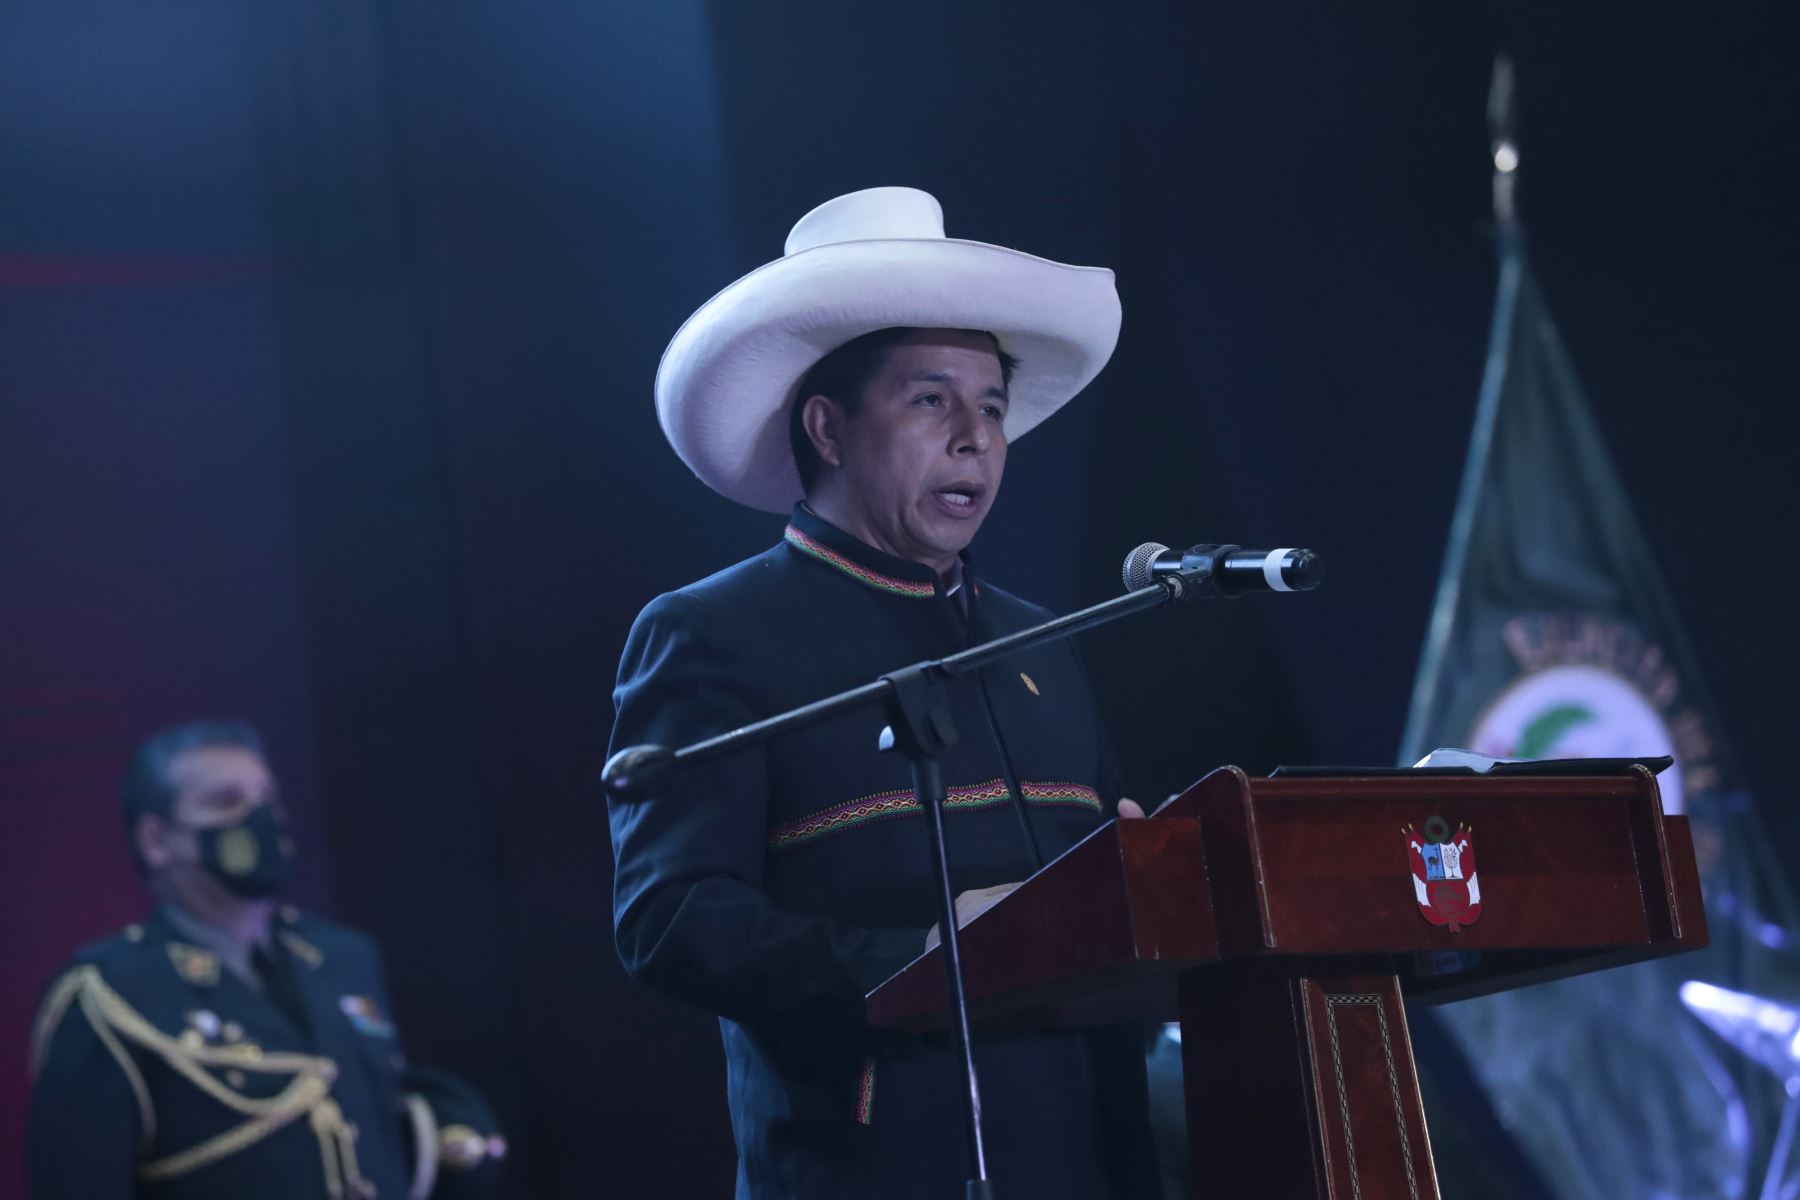 Presidente Pedro Castillo, inaugura el VIII Salón Internacional de Tecnología para la Defensa y Prevención de Desastres- SITDEF PERÚ 2021. Foto: ANDINA/ Prensa Presidencia